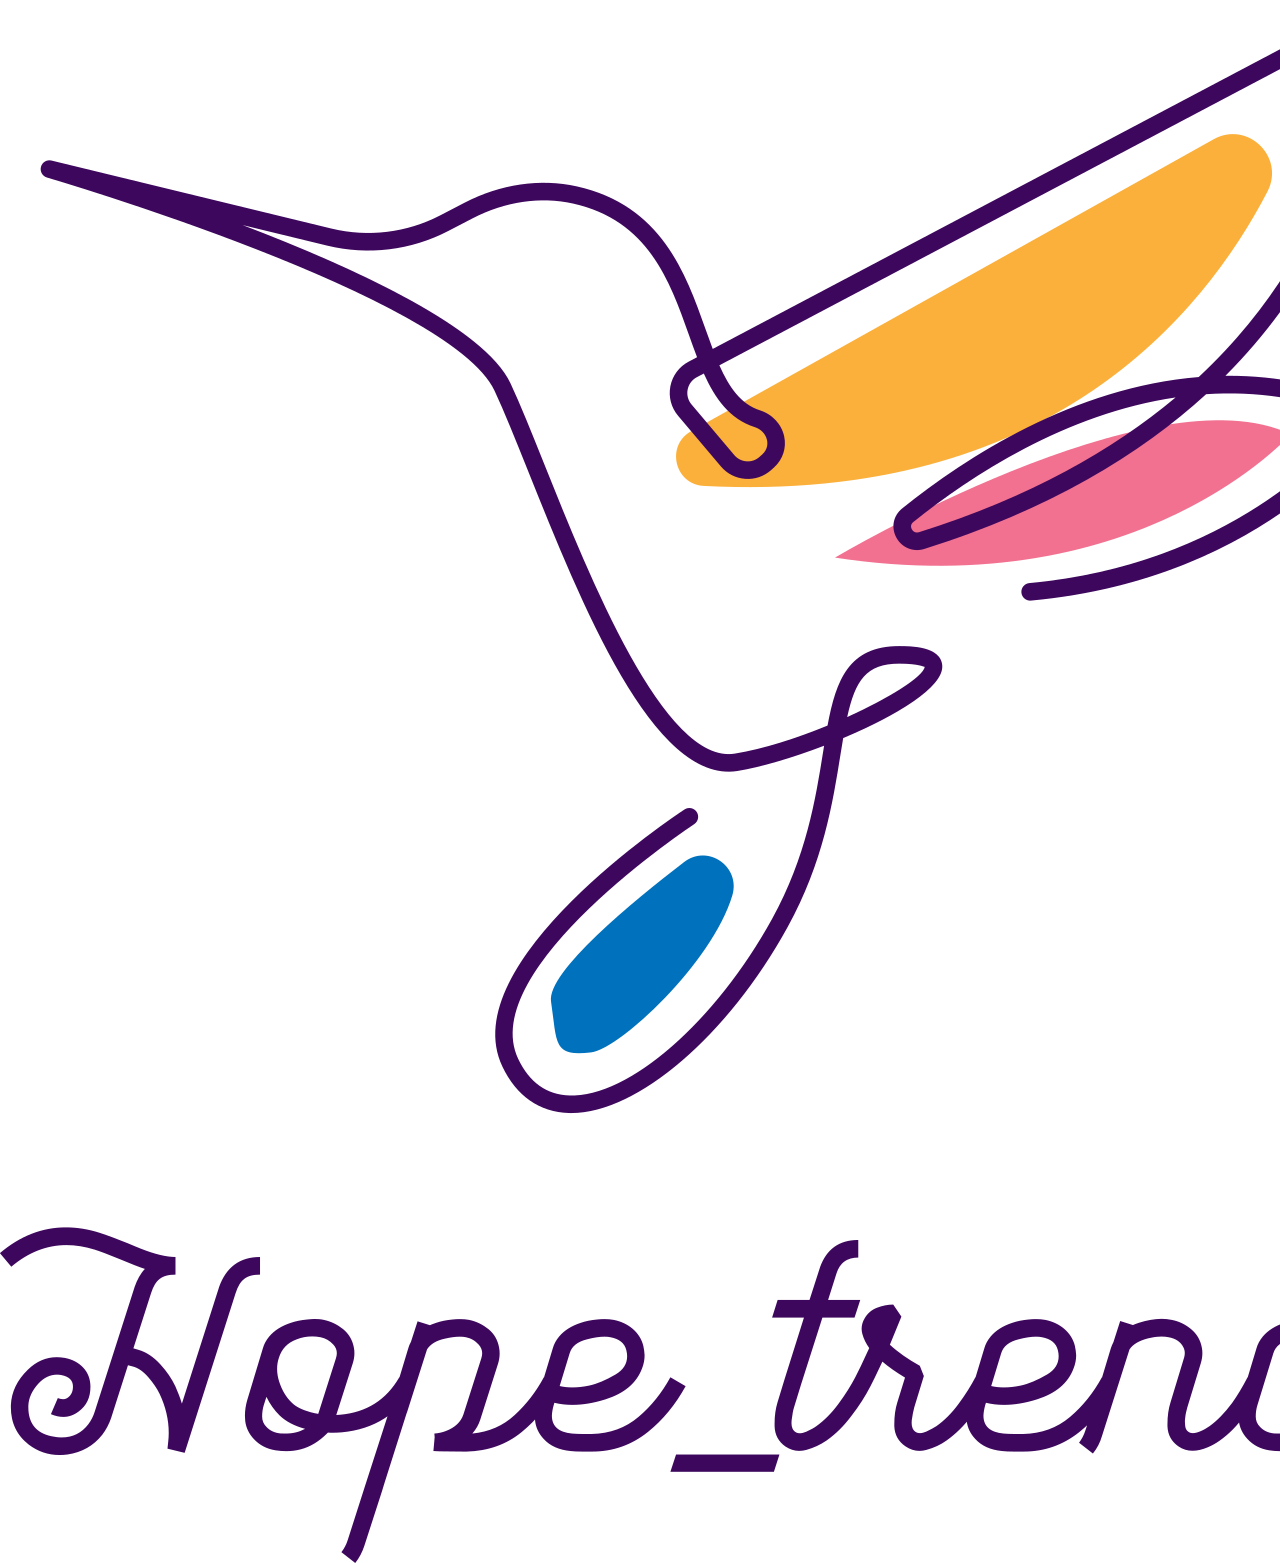 Hope_trend's logo